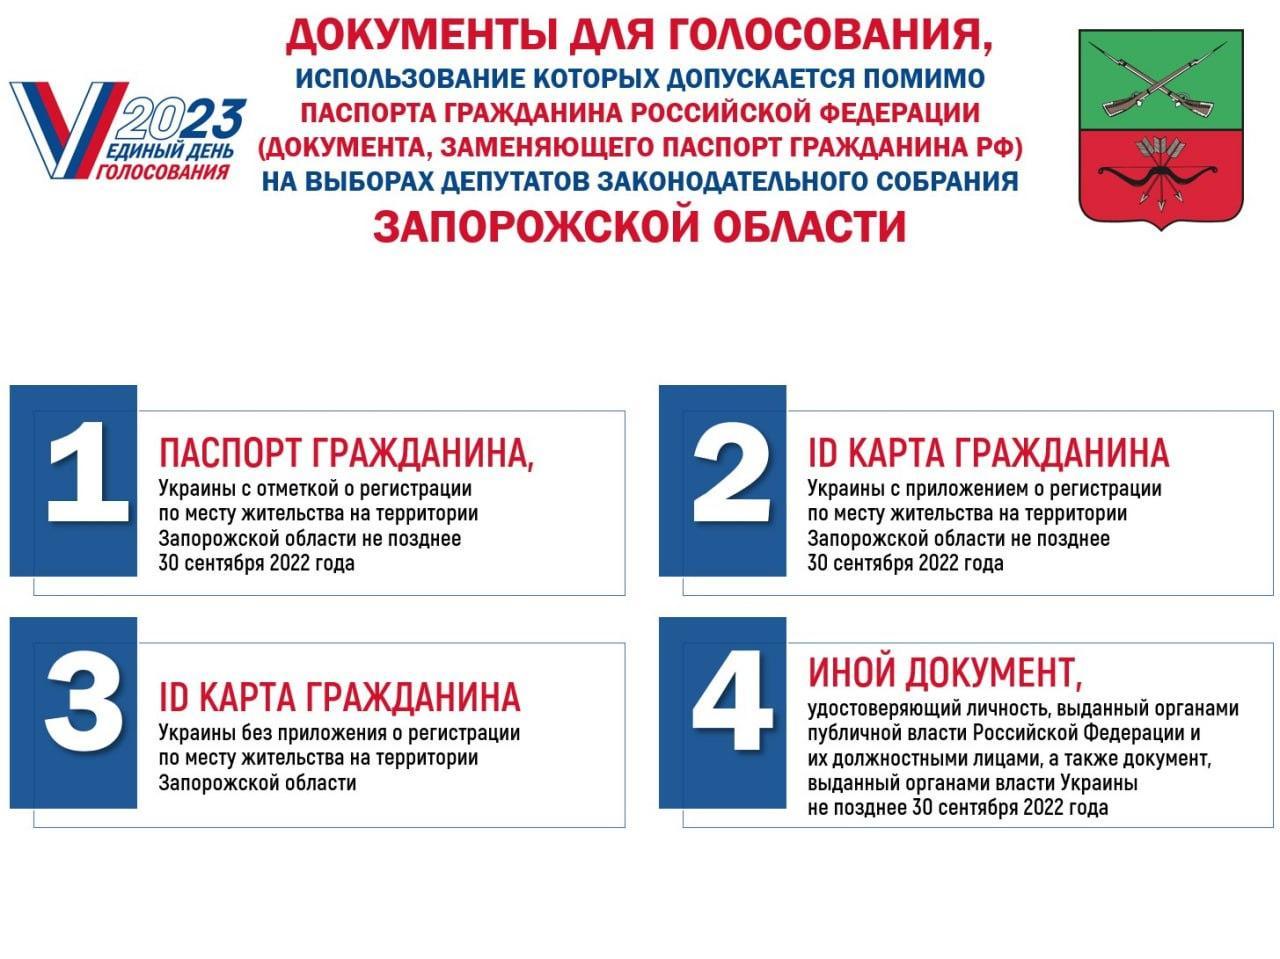 Жители новых регионов России смогут проголосовать на выборах депутатов органов законодательной власти  на территории Туапсинского района